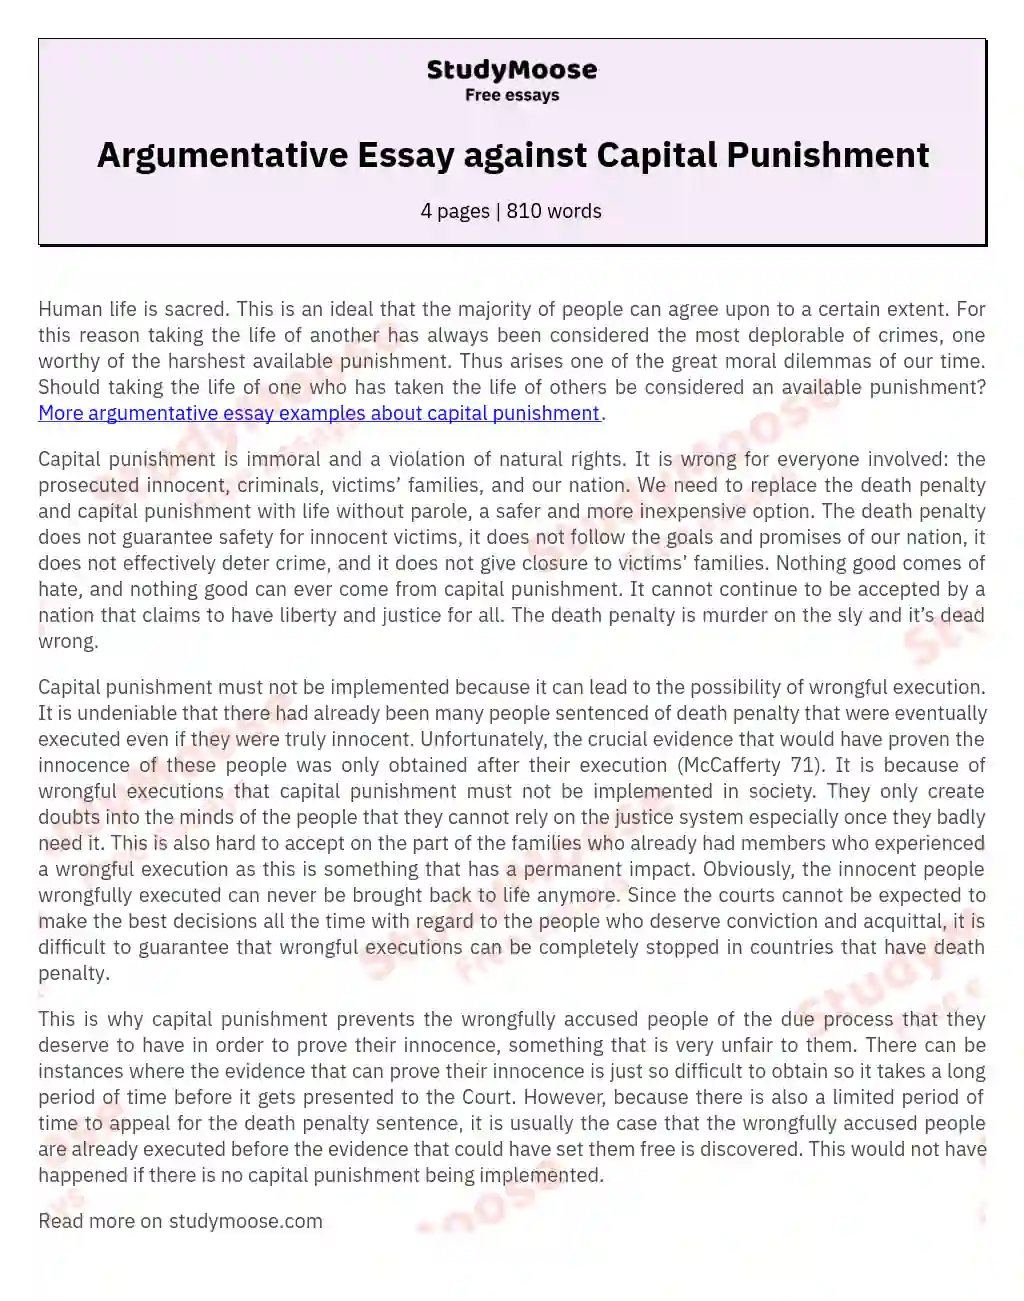 Argumentative Essay against Capital Punishment essay